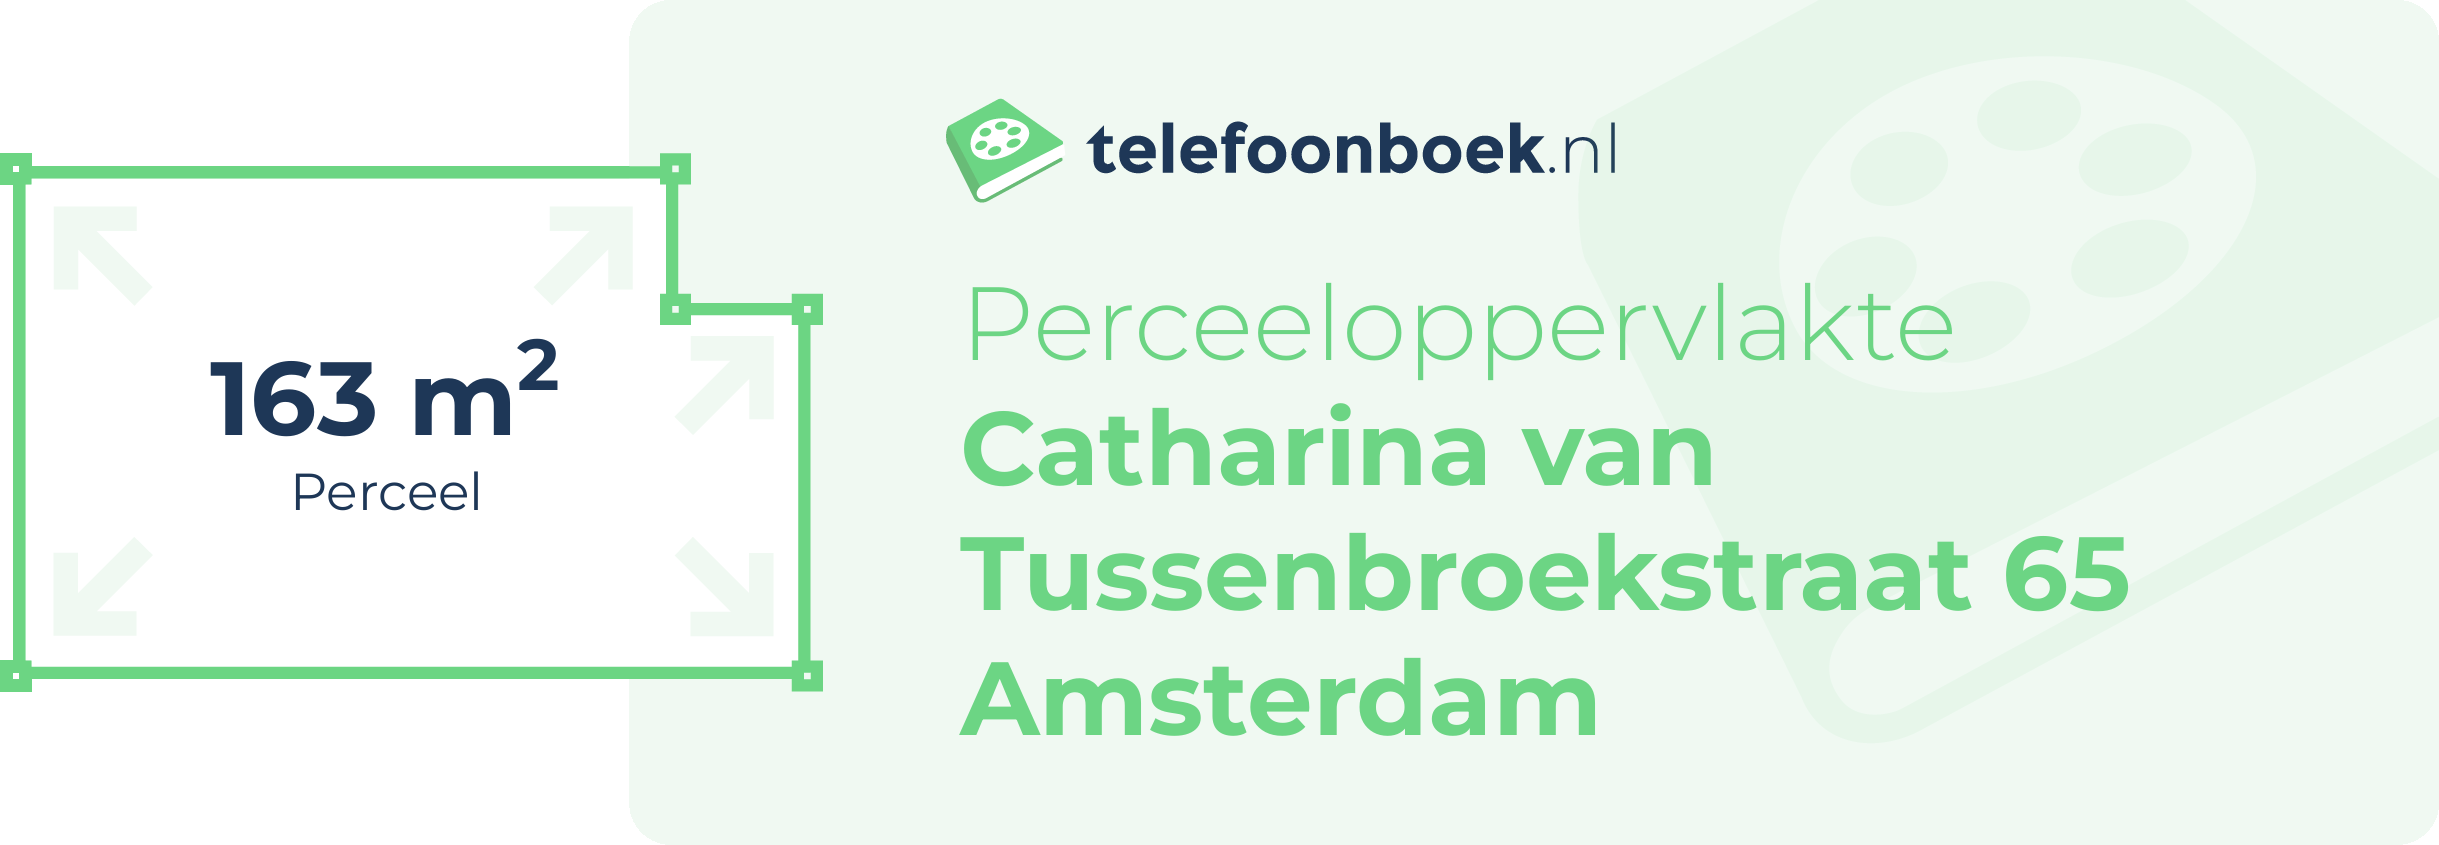 Perceeloppervlakte Catharina Van Tussenbroekstraat 65 Amsterdam